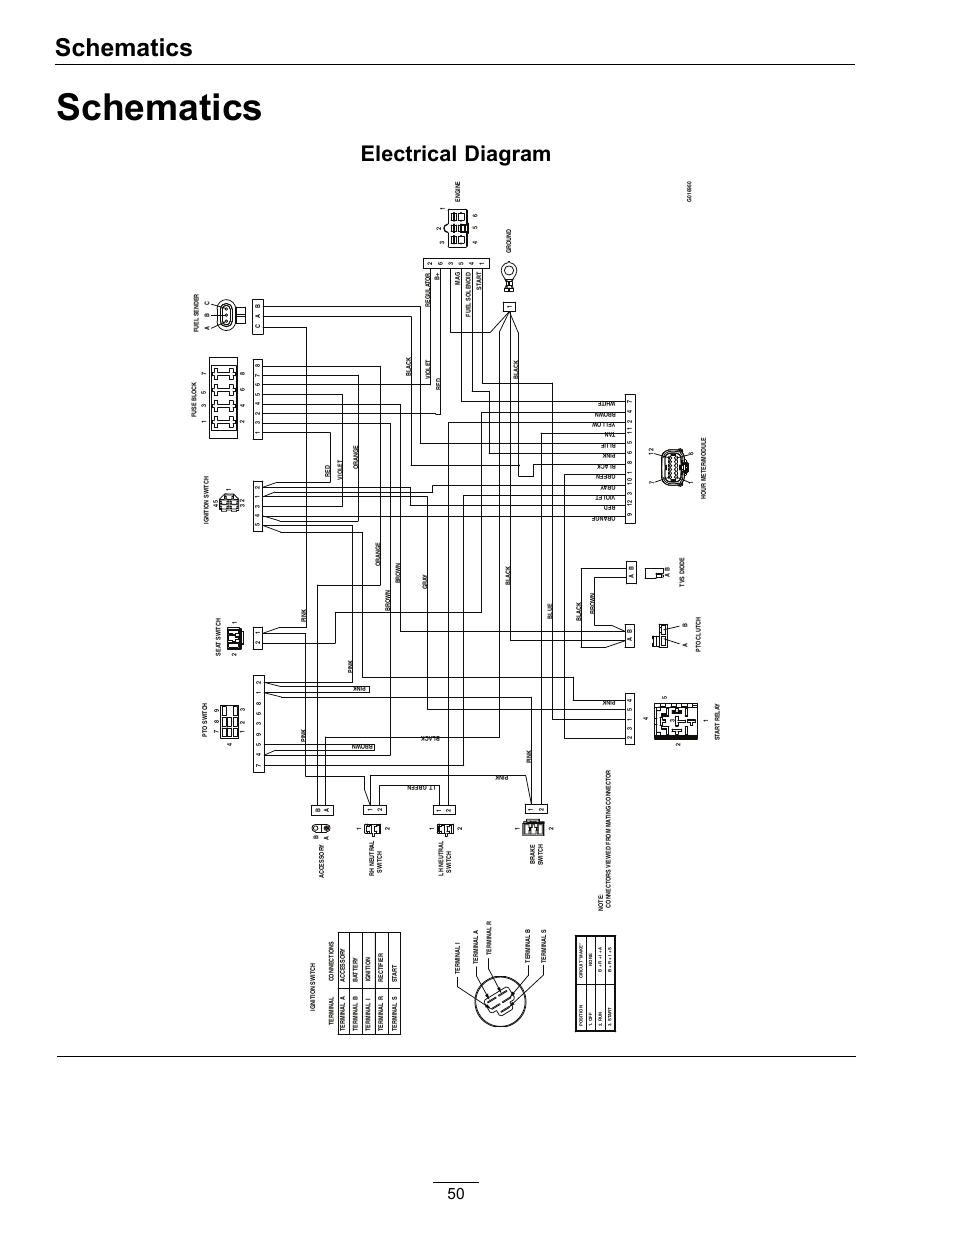 rule 800 bilge pump wiring diagram